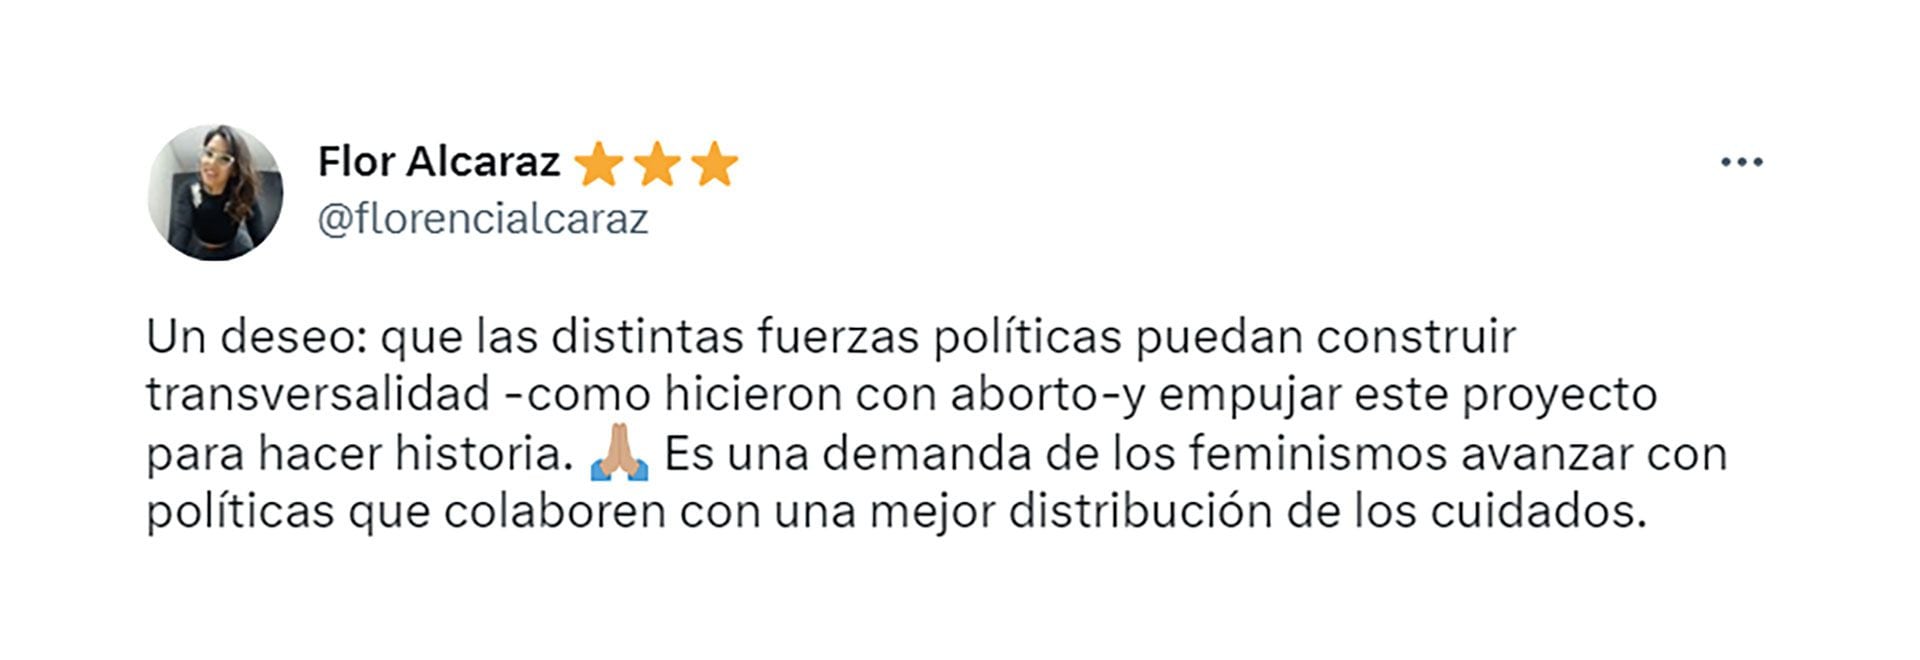 La periodista Flor Alcaraz propone que la transversalidad política que se logró con la ley de aborto legal, seguro y gratuito se traslade a la pelea por la ley de cuidados